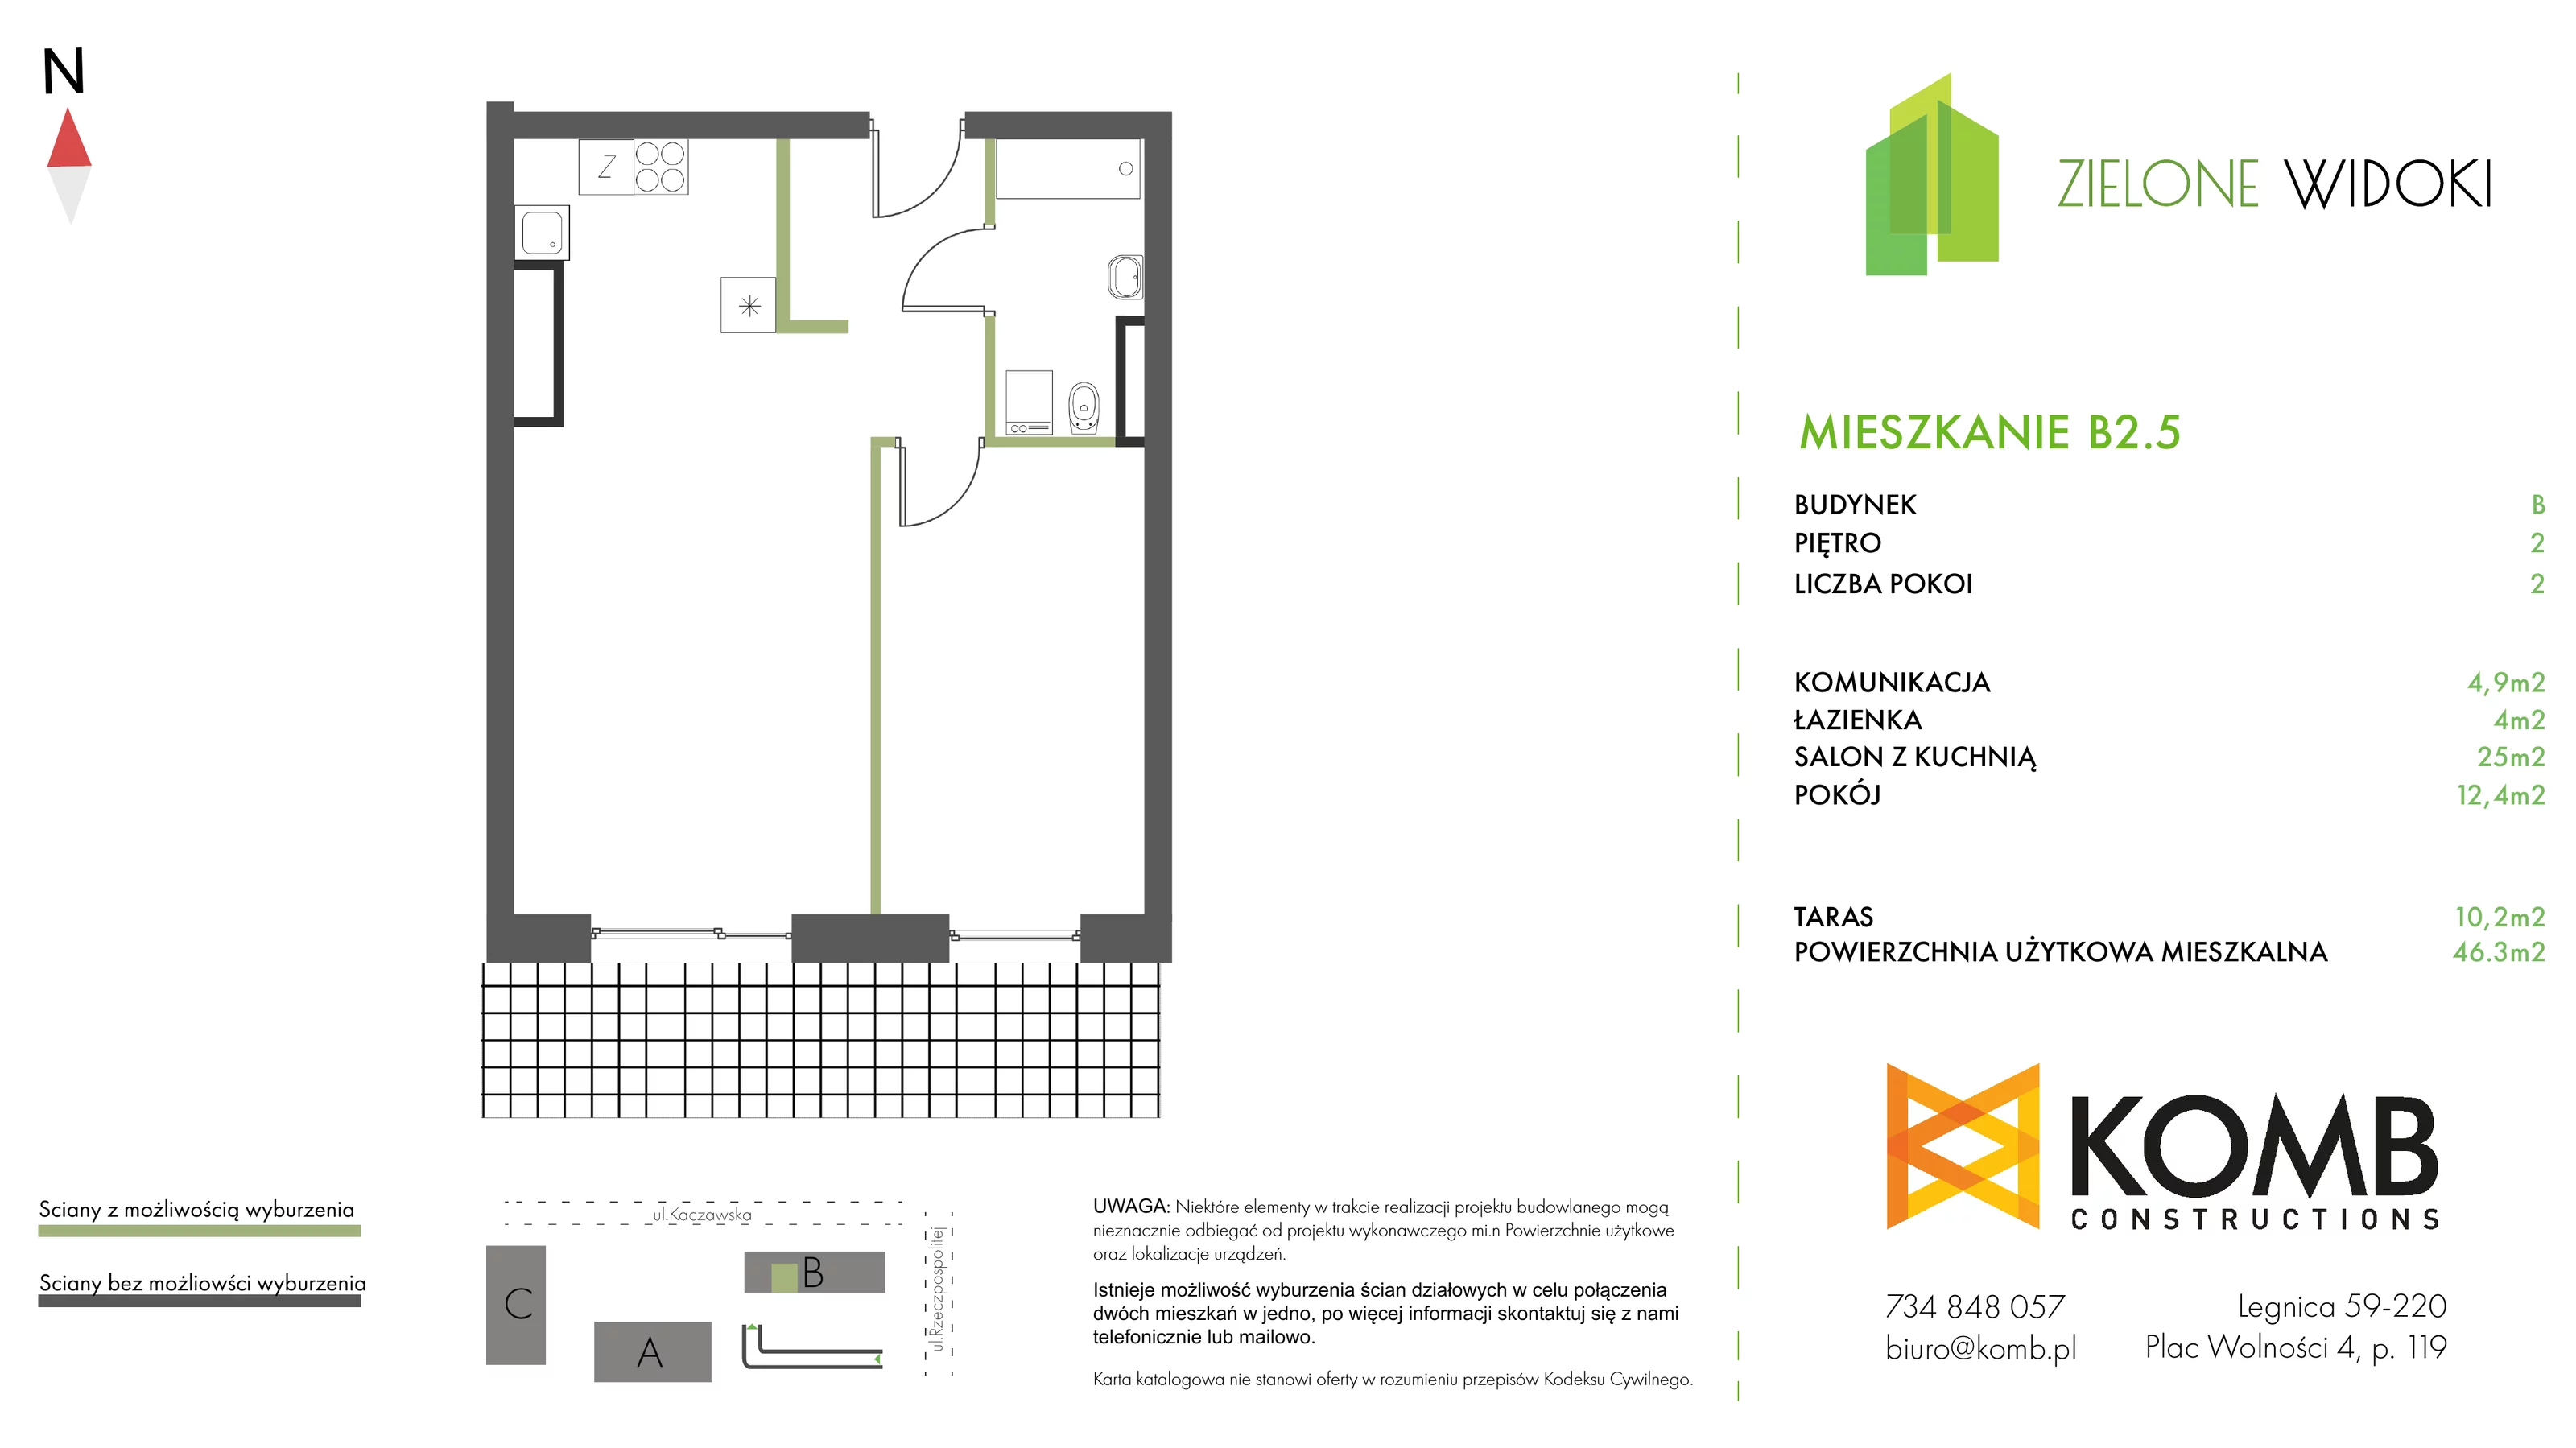 Mieszkanie 46,30 m², piętro 2, oferta nr B2.5, Zielone Widoki, Legnica, Bielany, al. Rzeczypospolitej 23